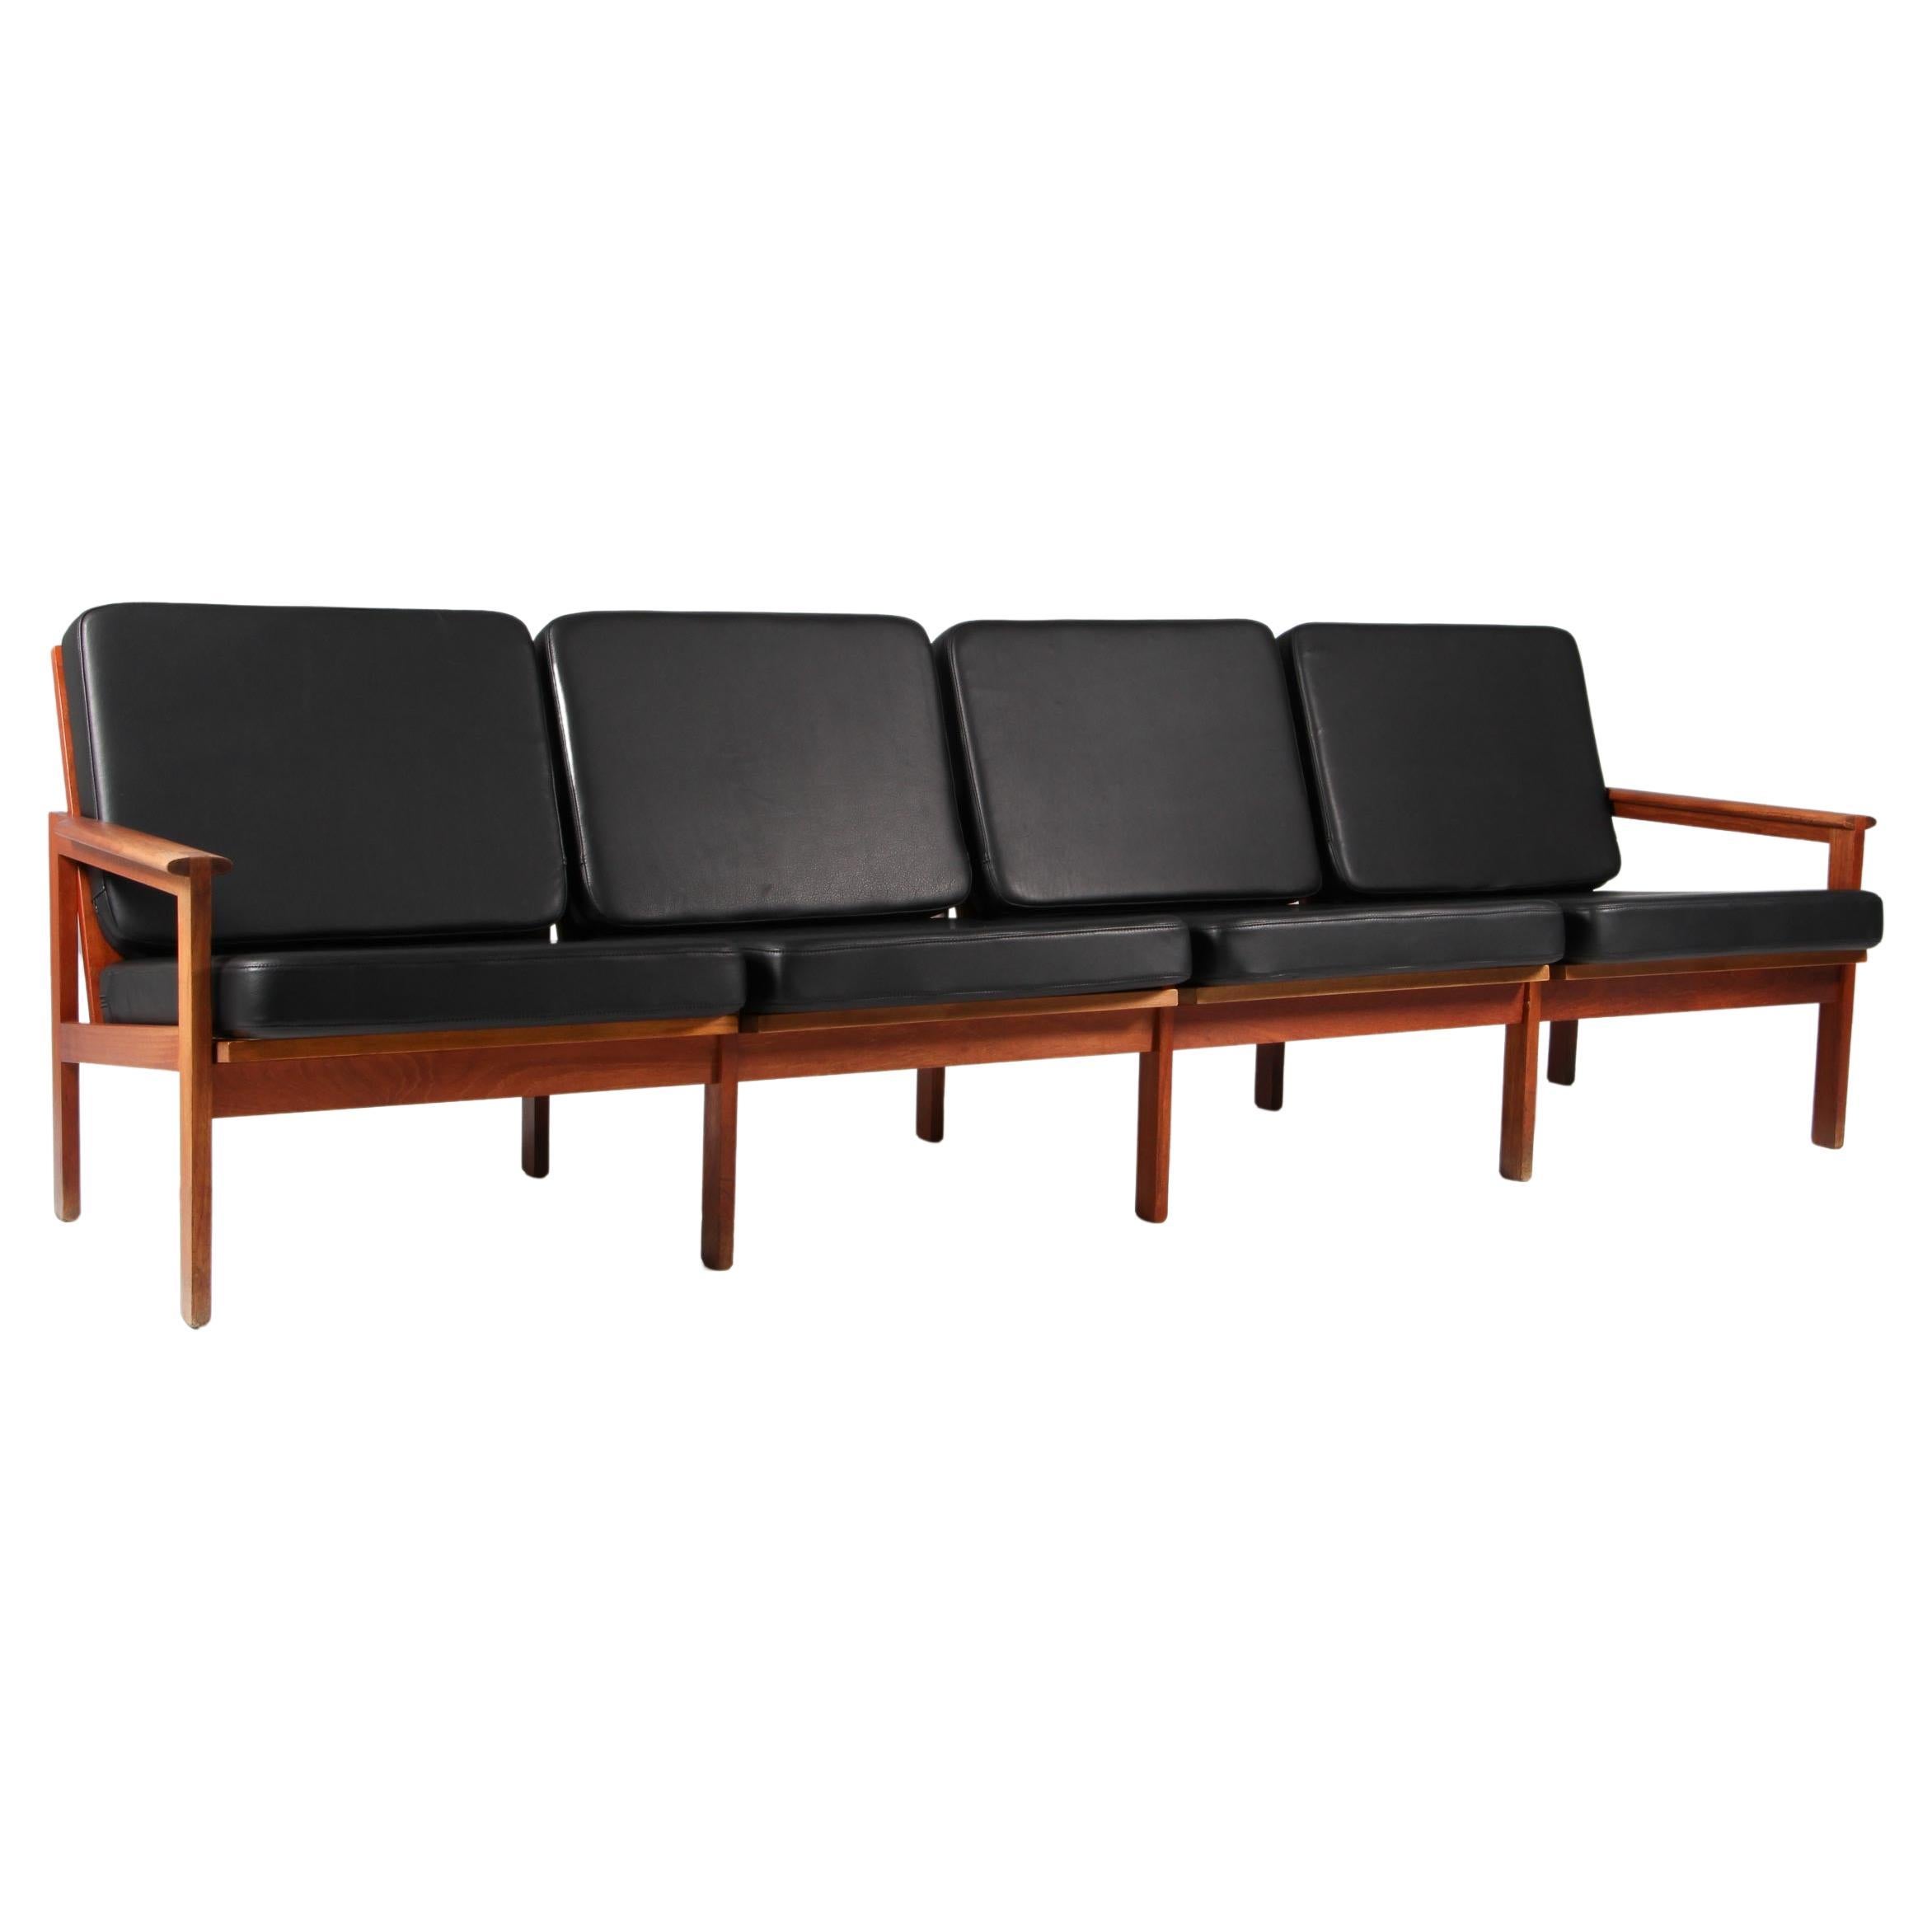 Illum Wikkelsø für N. Eilersen Dreisitziges Sofa, Modell Capella, aus massivem Teakholz